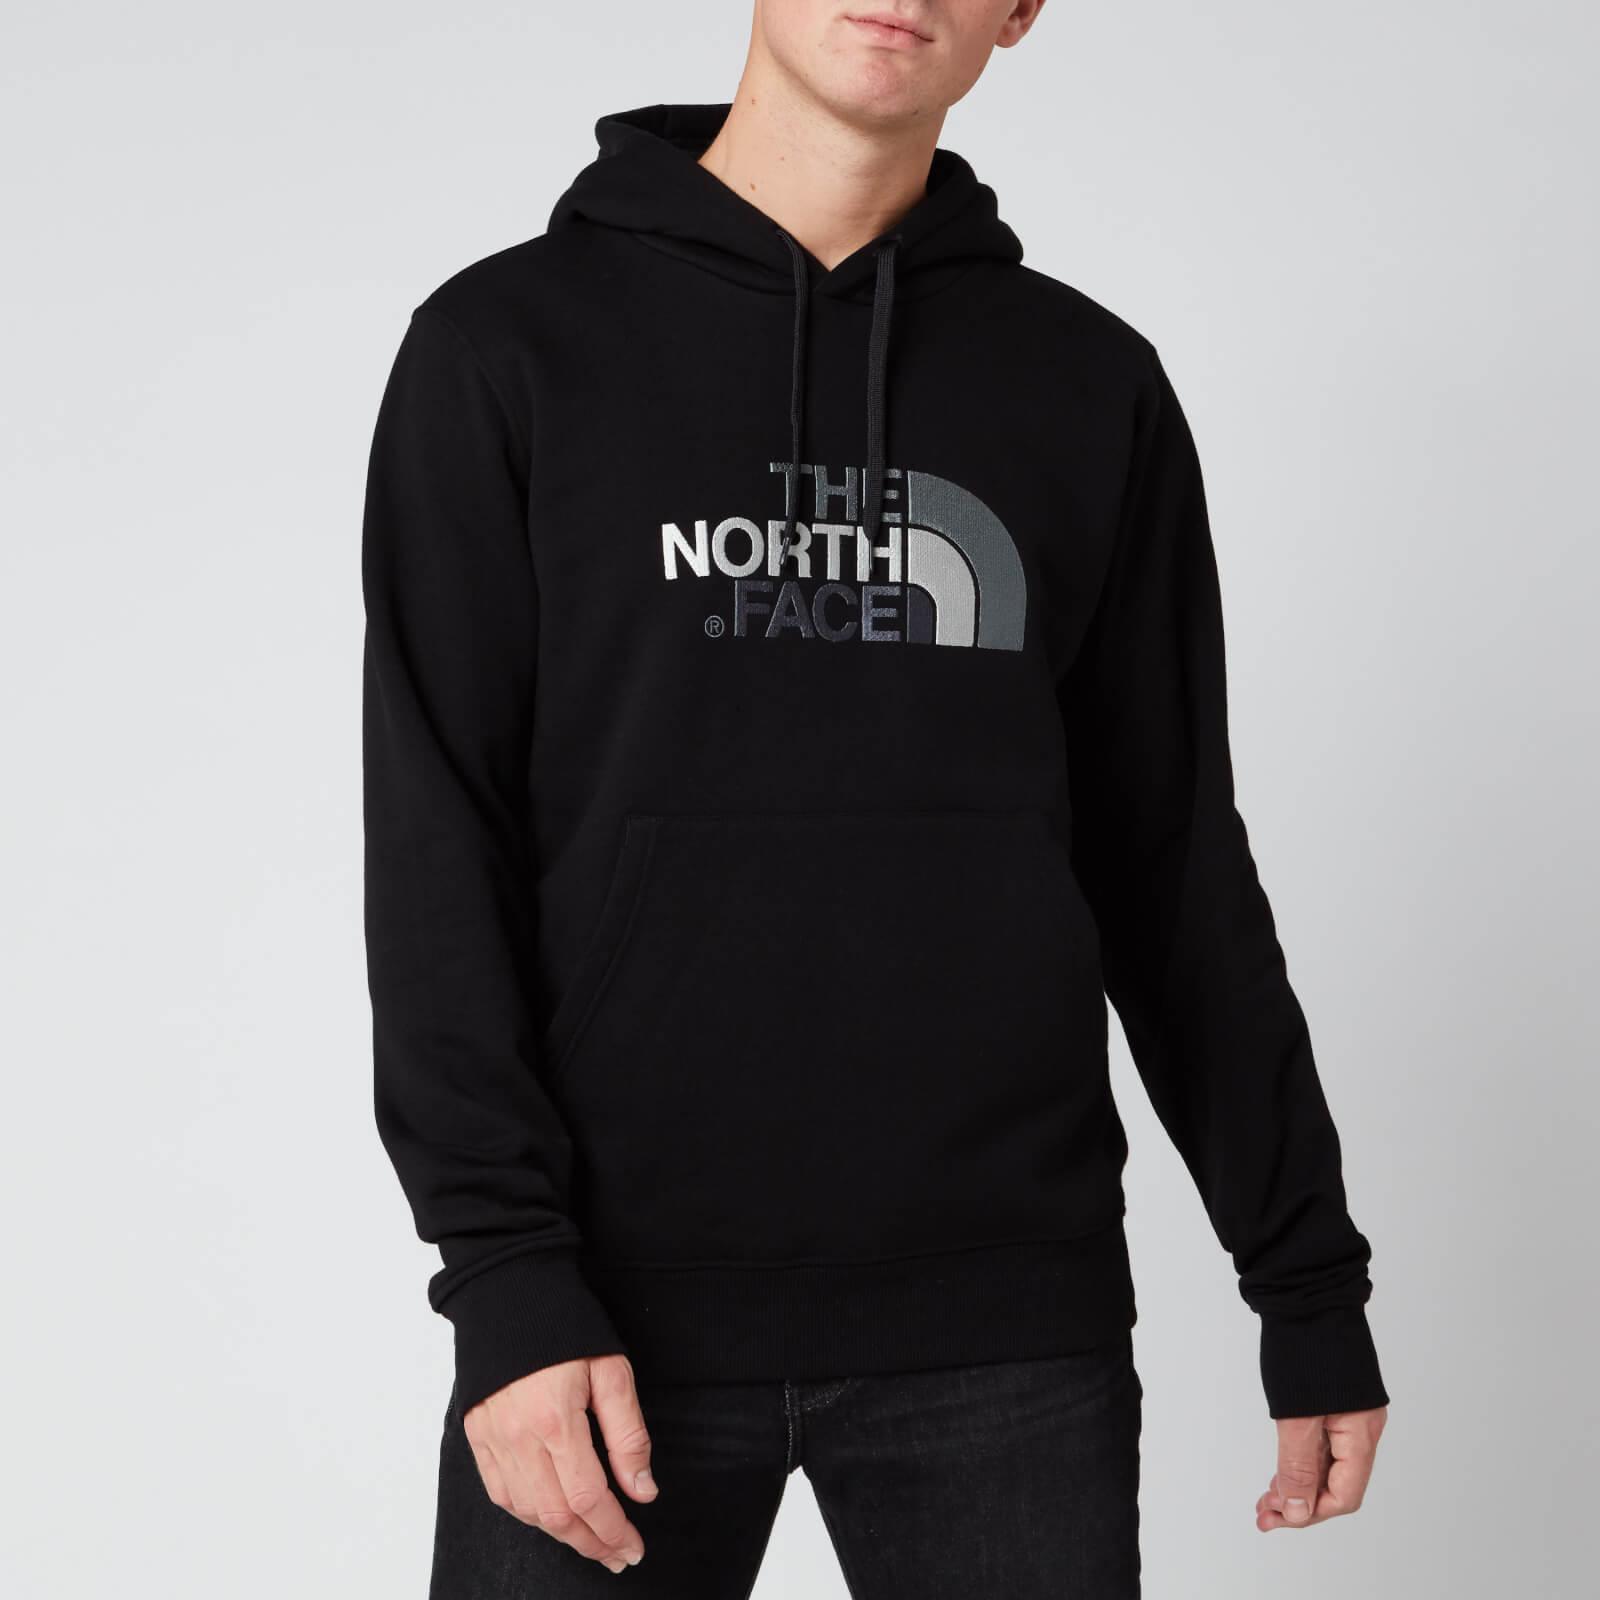 The North Face Drew Peak Hoodie in Black/Black (Black) for Men - Save 57% |  Lyst